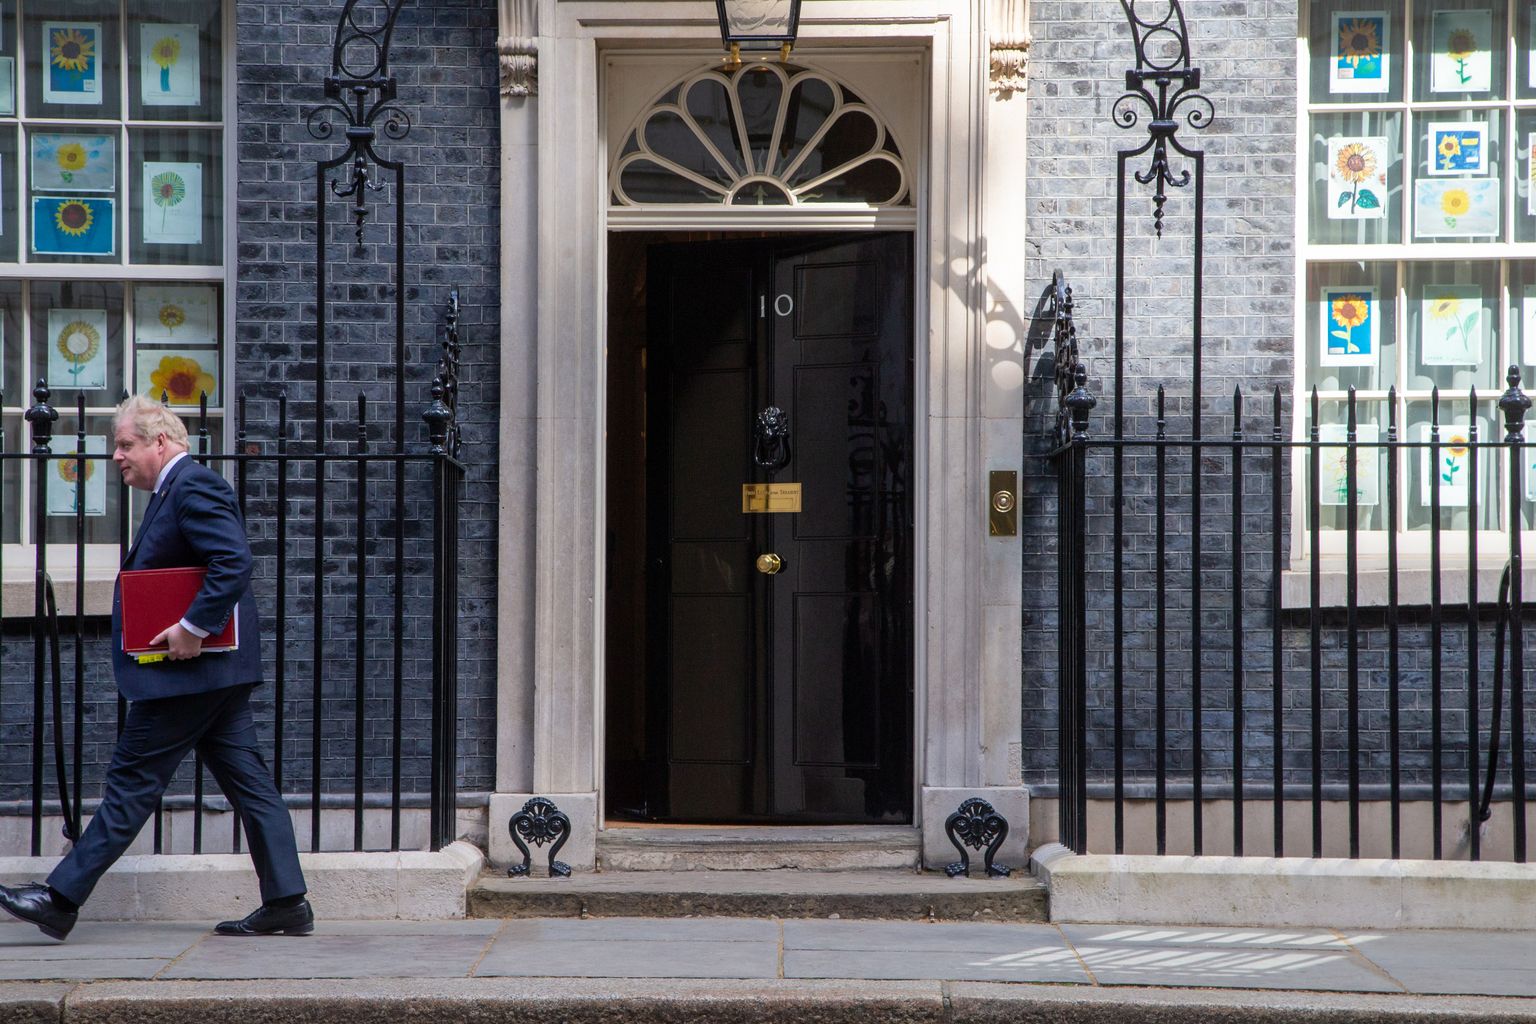 Ühendkuningriigi peaminister Boris Johnson väljumas oma residentsist Downing Street 10. Nii teda kui ka tema kaht eelkäijat, aga ka opositsioonilisi leiboriste on seostatud erinevate Vene päritolu rahastajatega.